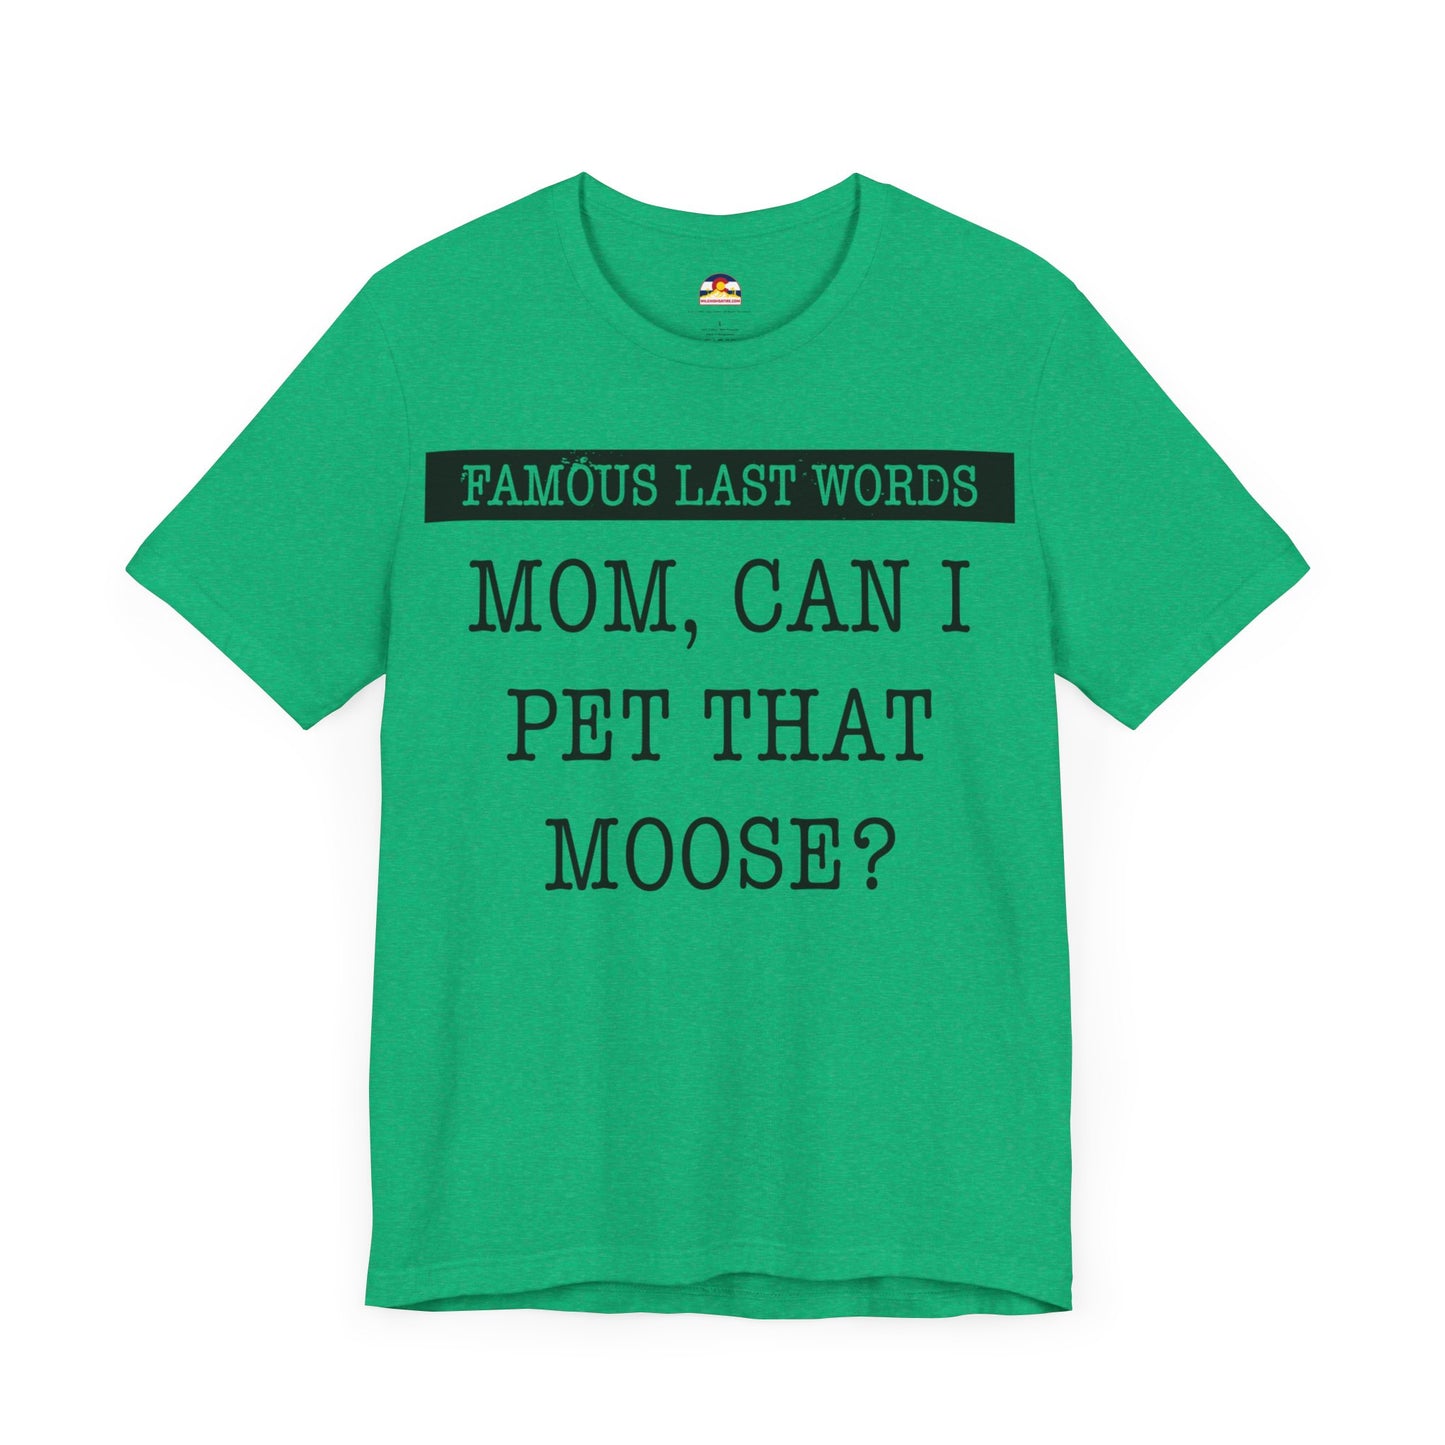 FLW Pet The Moose T-Shirt